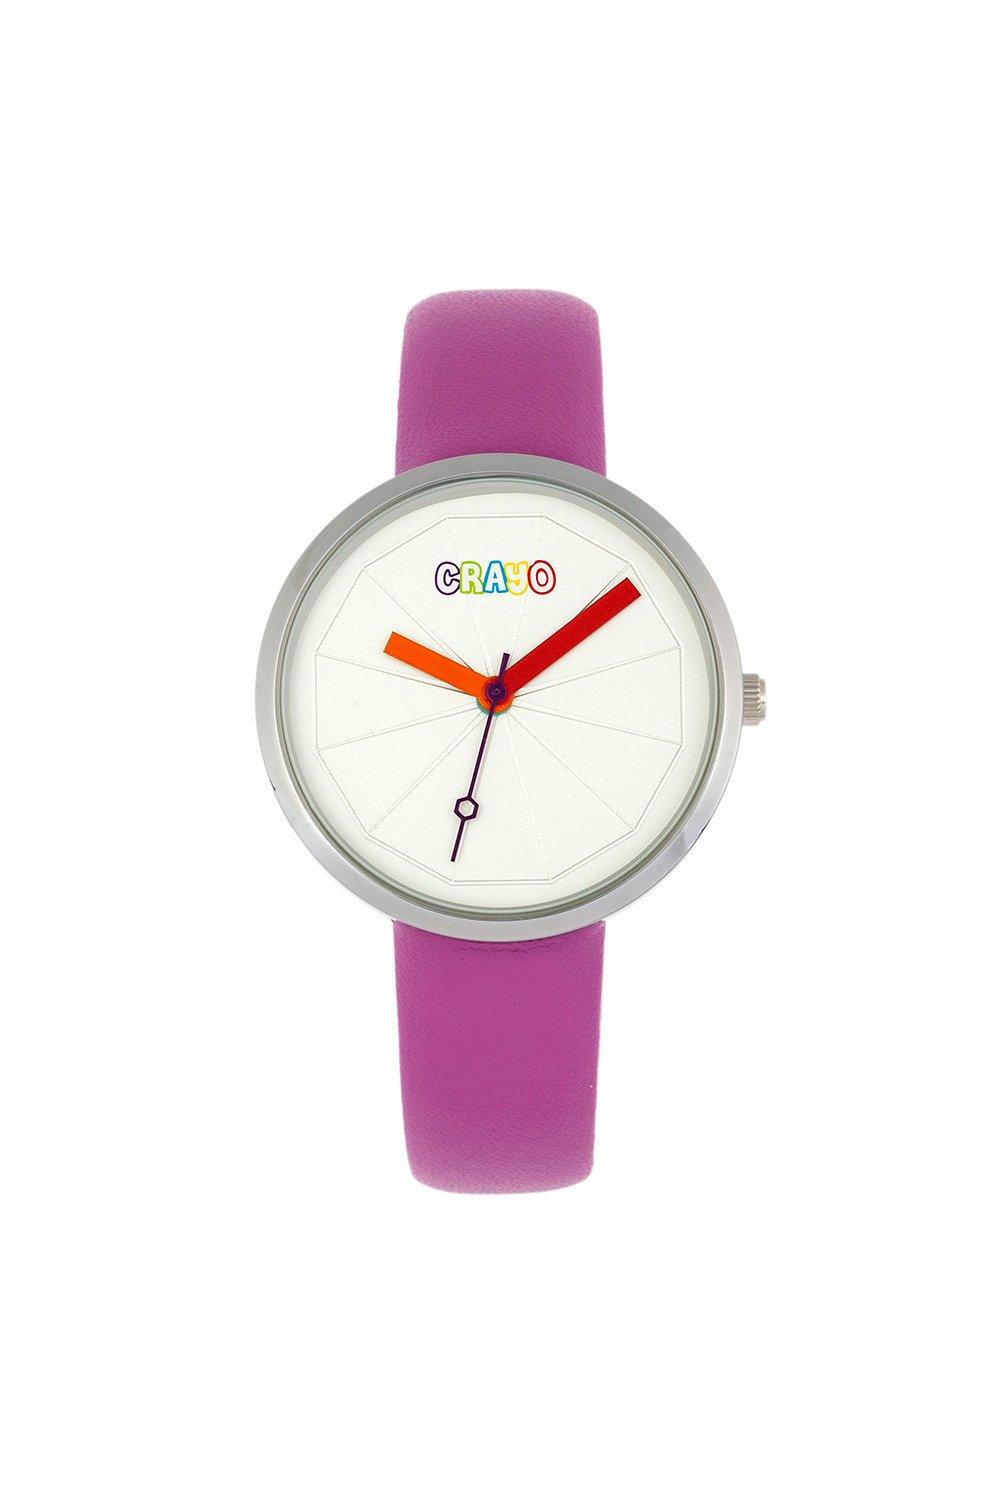 Метрические часы унисекс Crayo, фиолетовый